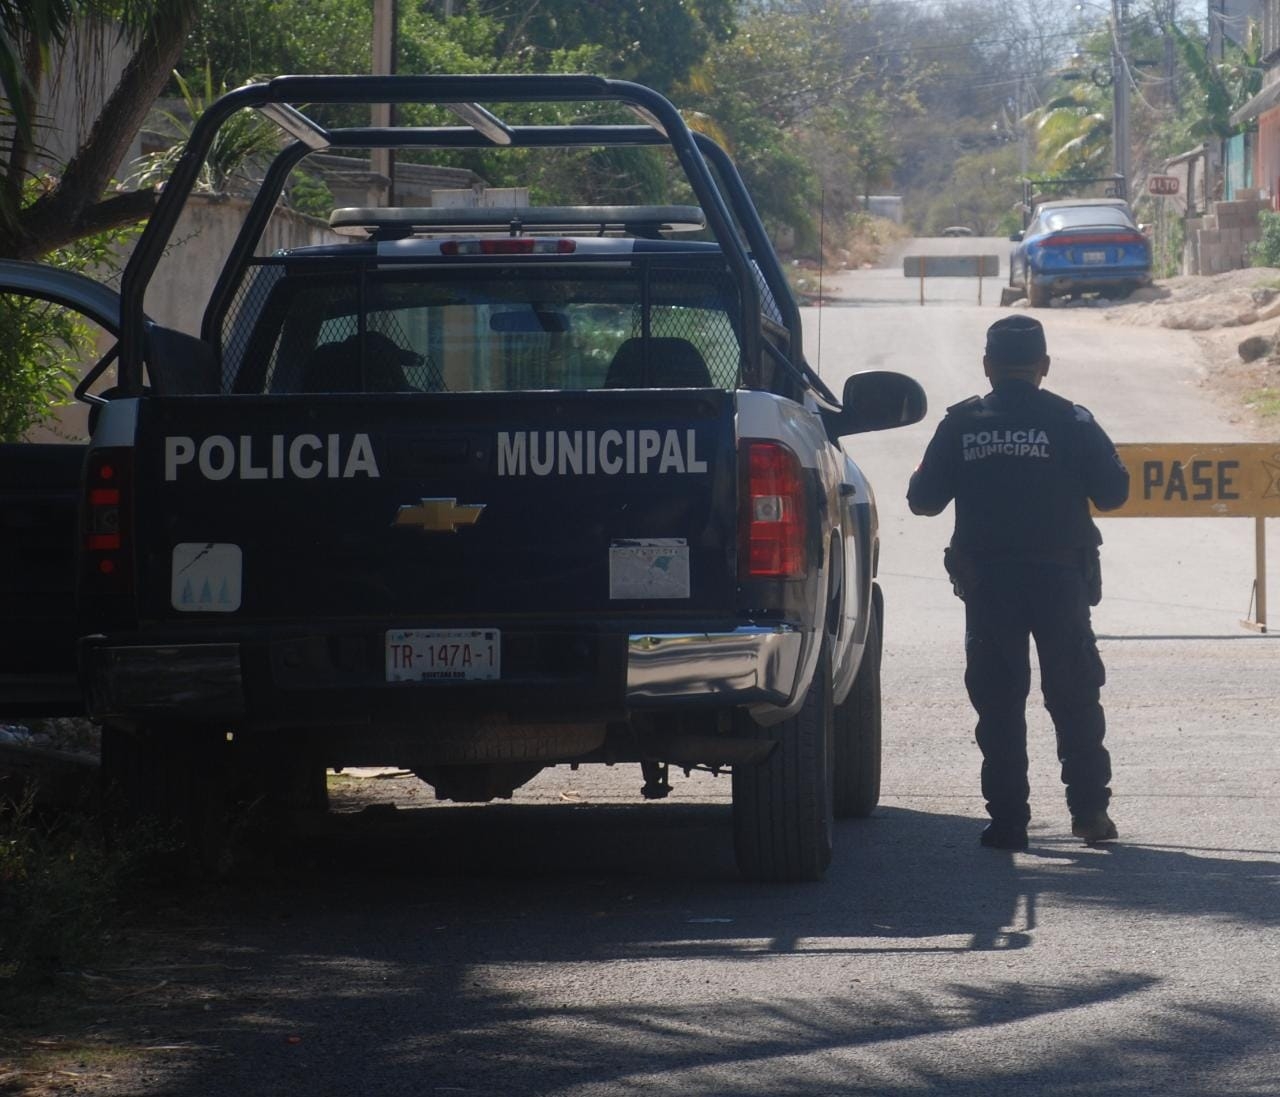 Víctimas de violencia intrafamiliar reciben protección policial en José María Morelos, afirman